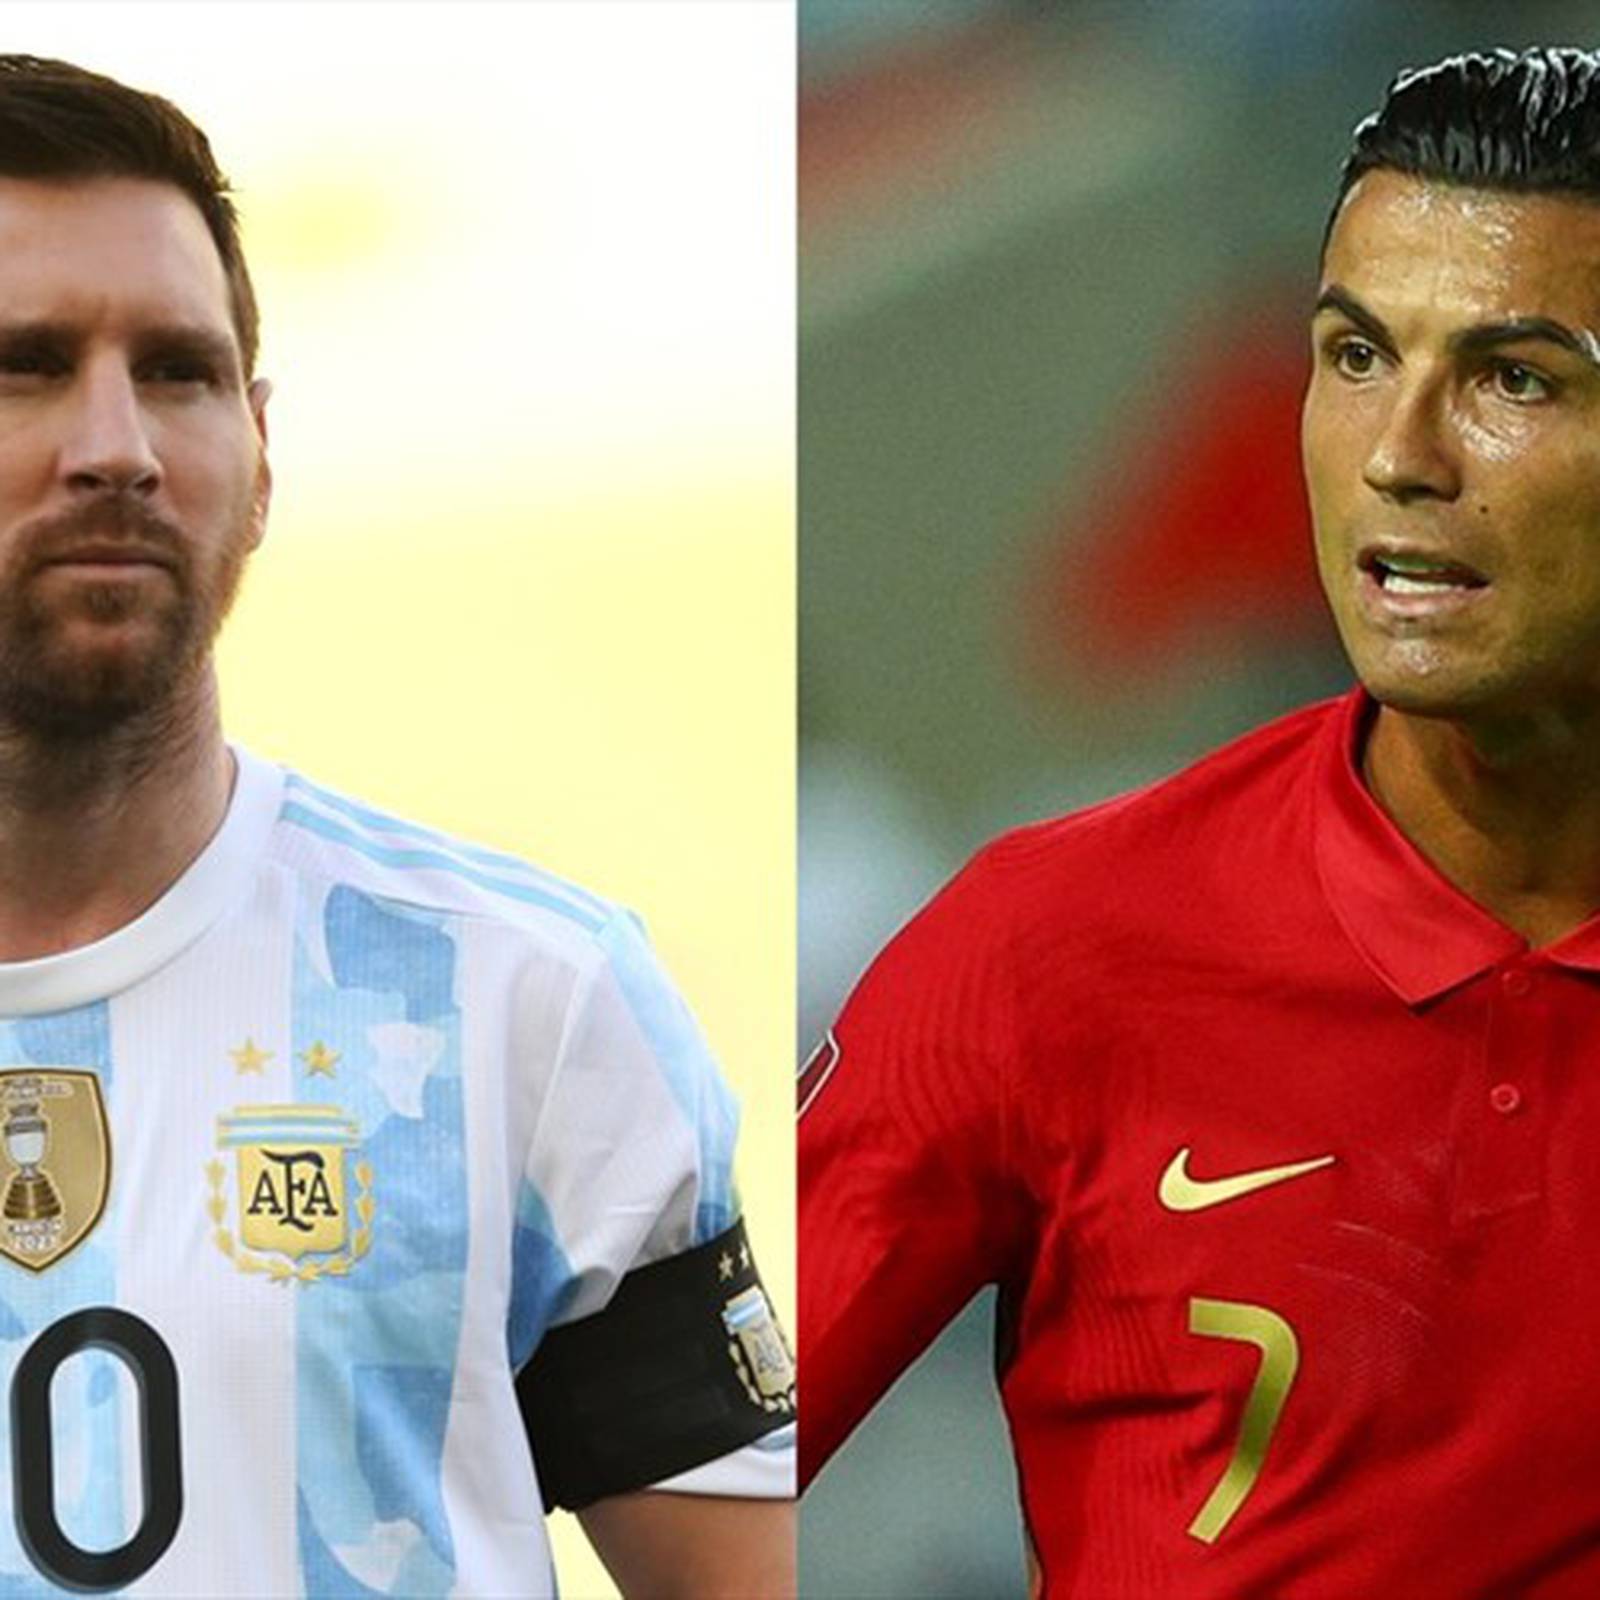 El mejor jugador del Mundial de Qatar según estudio : ¿Messi o Cristiano?  Cálculo de Oxford determinó quién es el mejor del mundo